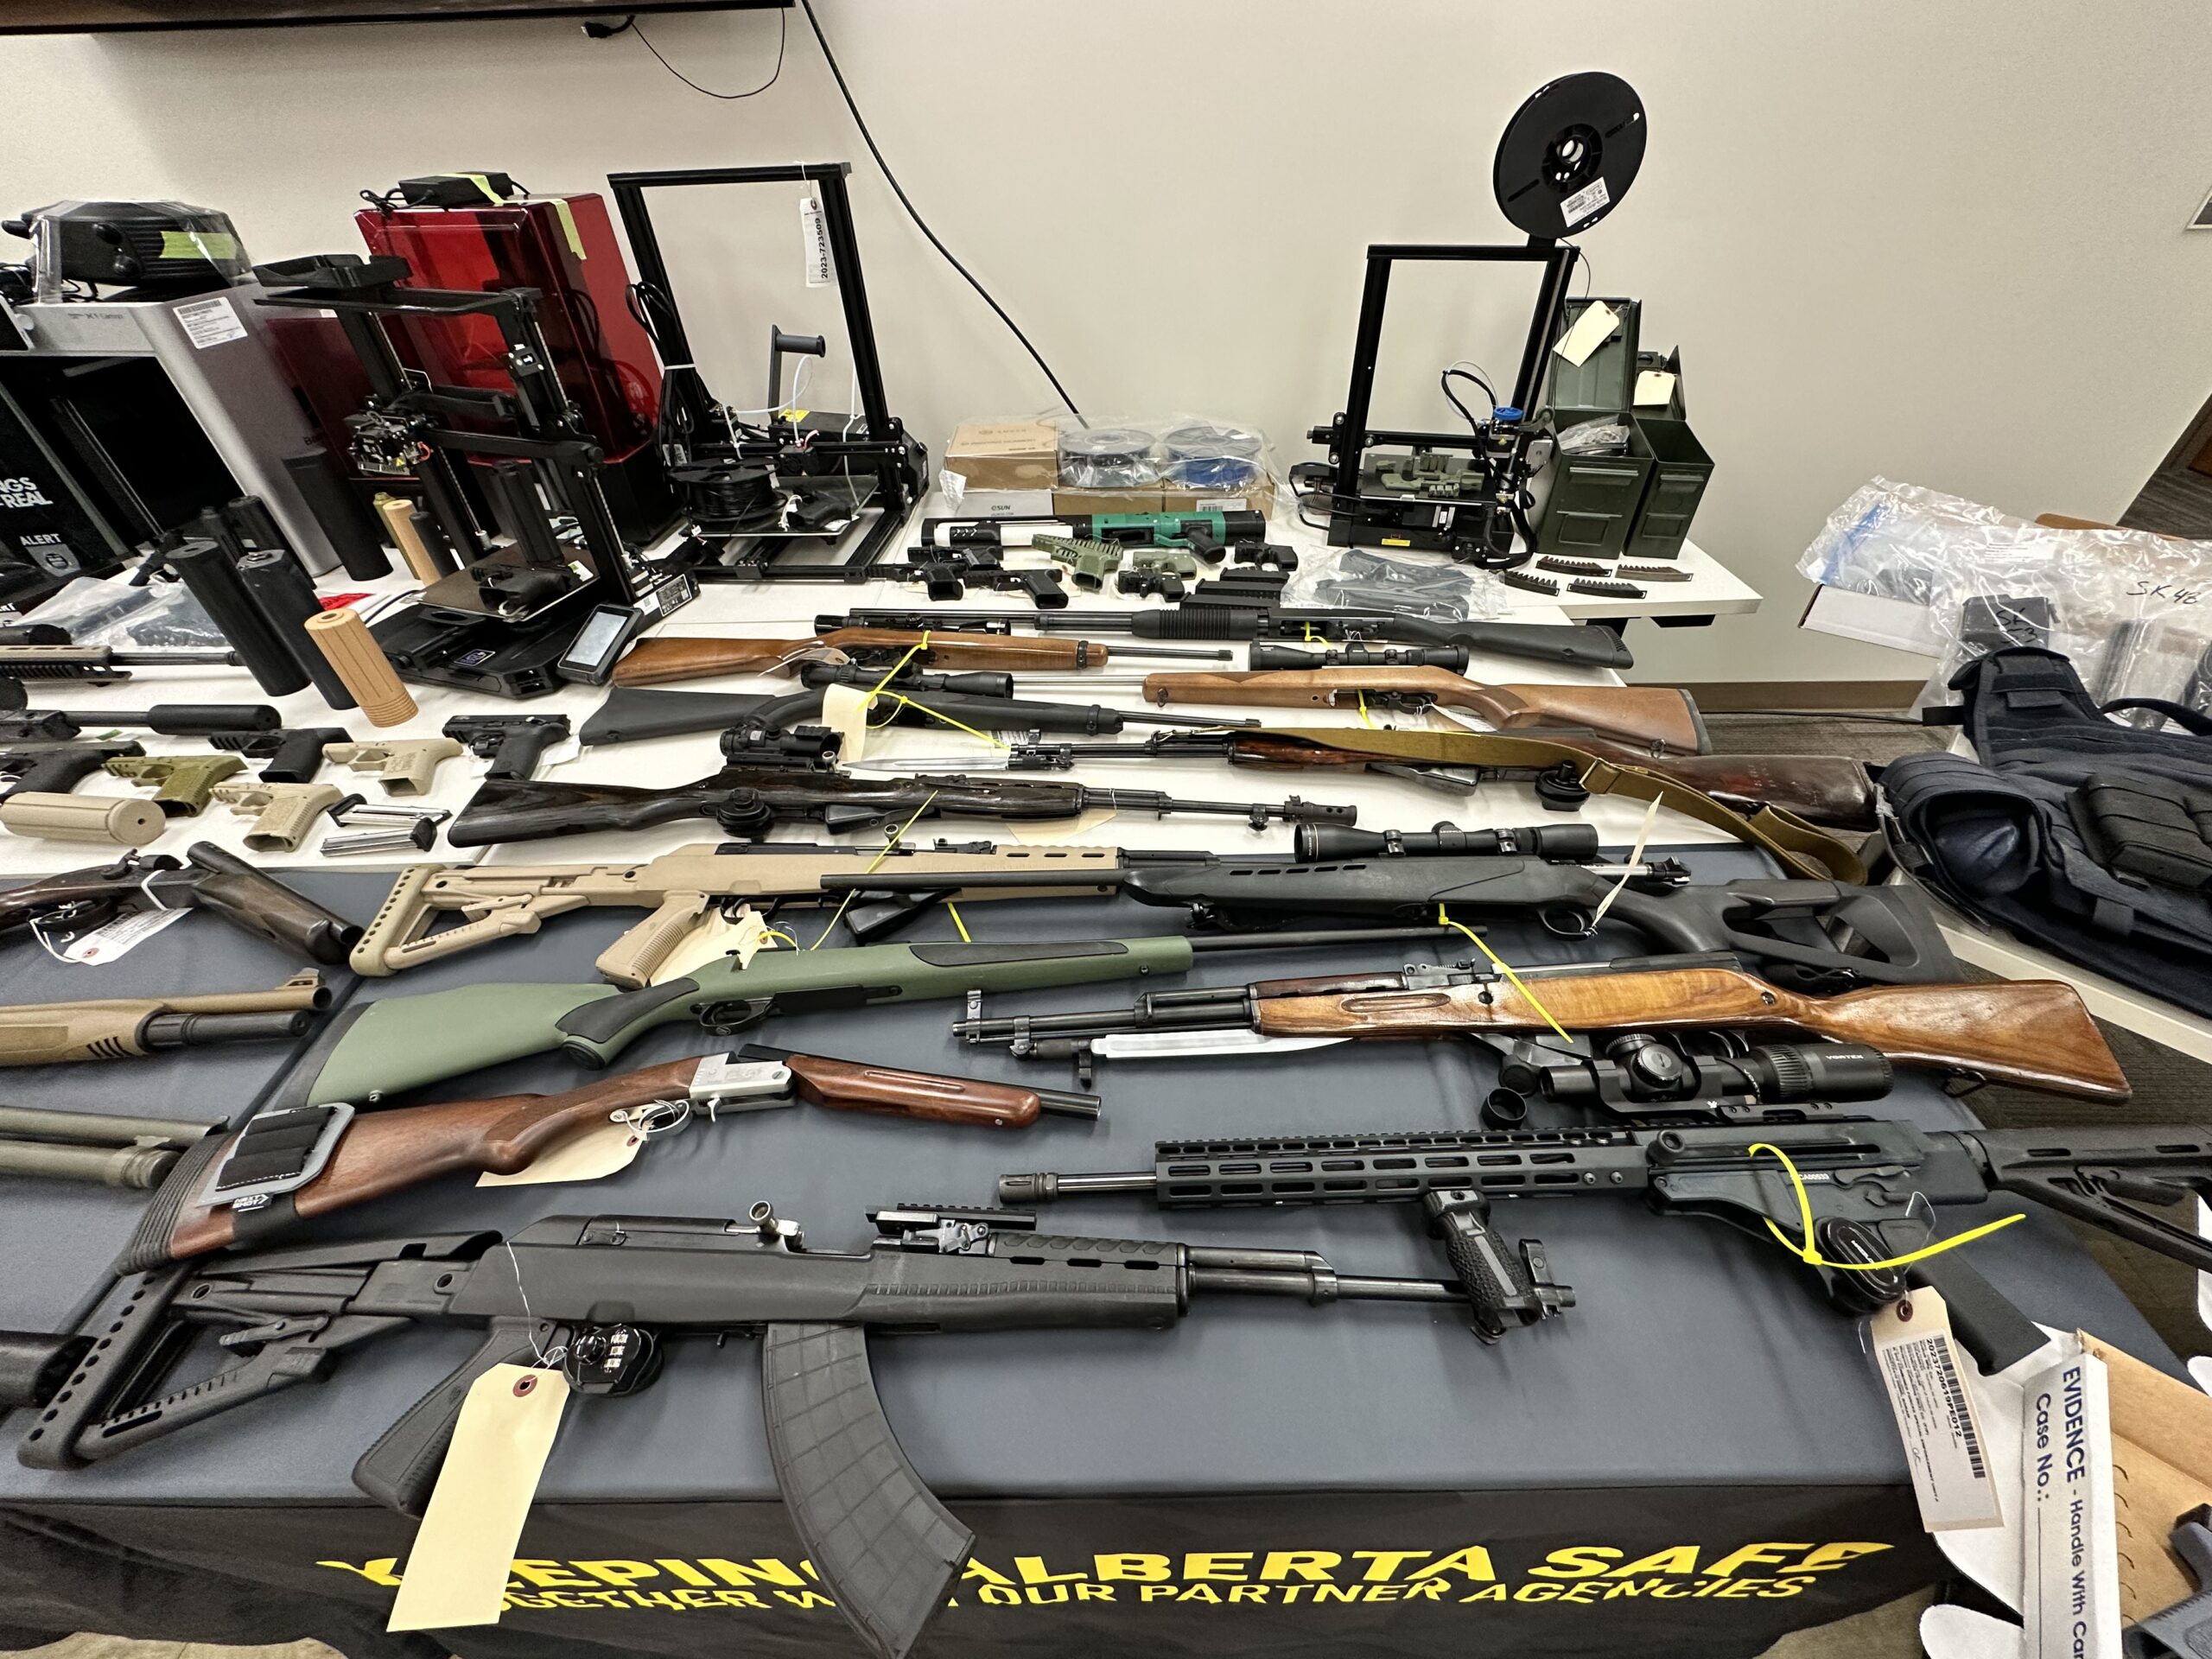 3D-printed firearms, handguns, and rifles seized from Lloydminster, Alberta.